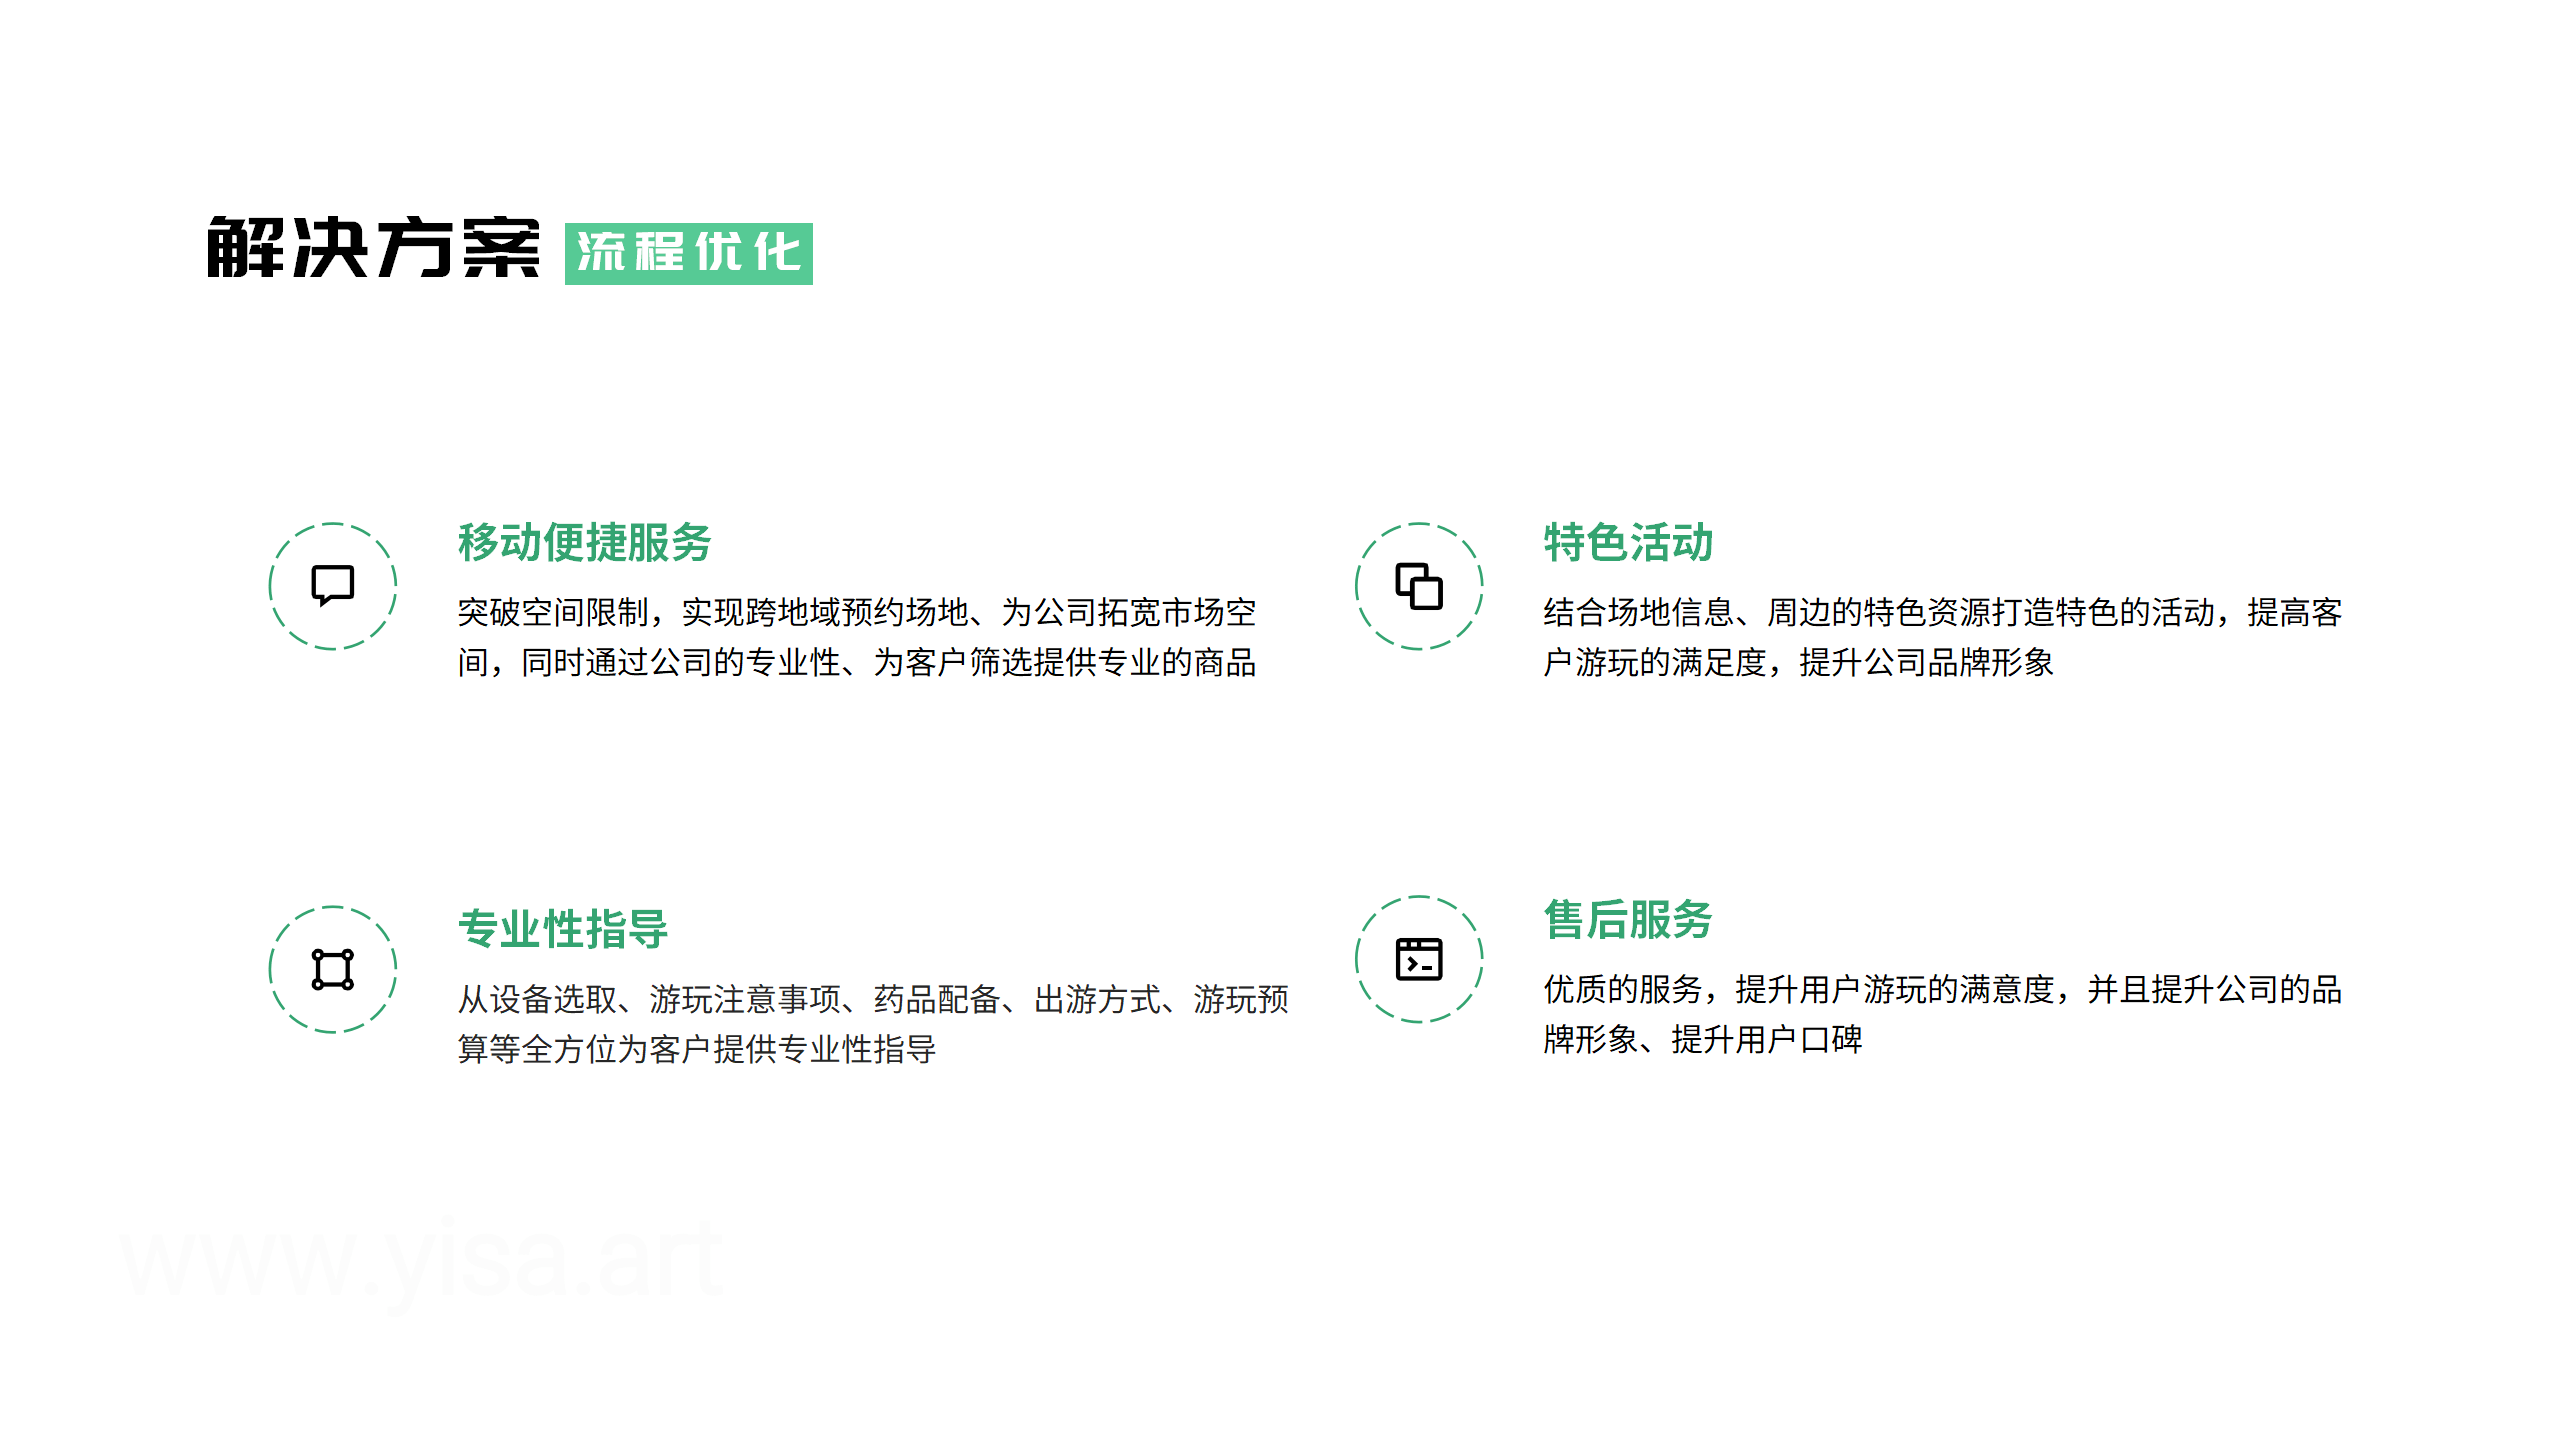 户外营销系统 黄伟 V2.0 -20230323_07